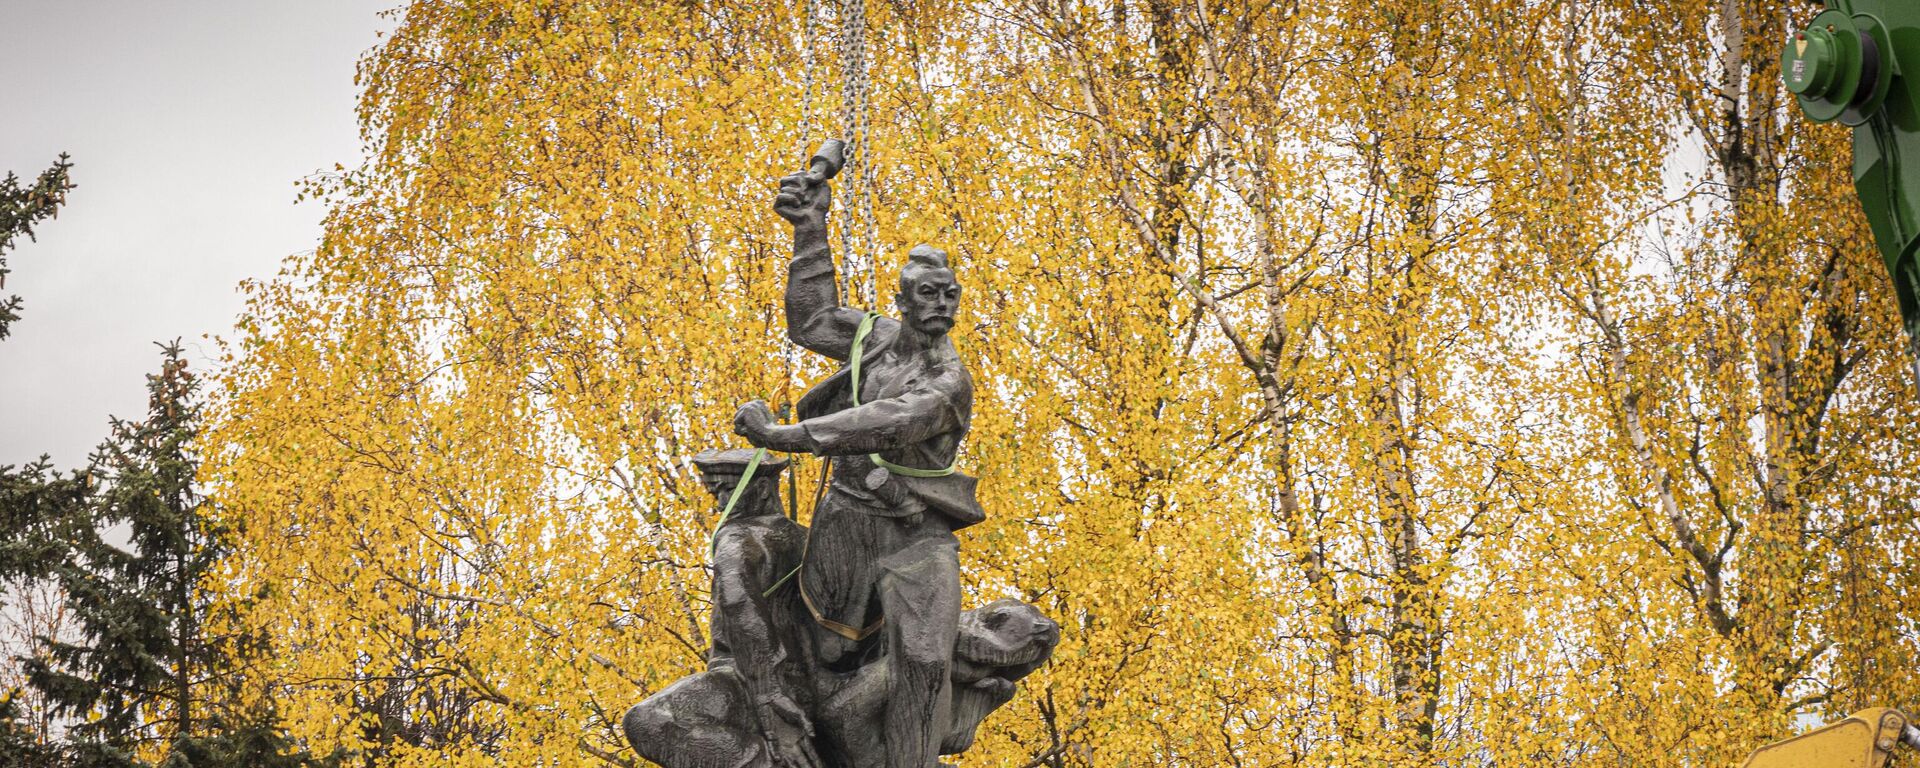 Снос памятника защитникам Лиепаи, 25 октября 2022 года  - Sputnik Латвия, 1920, 15.11.2022